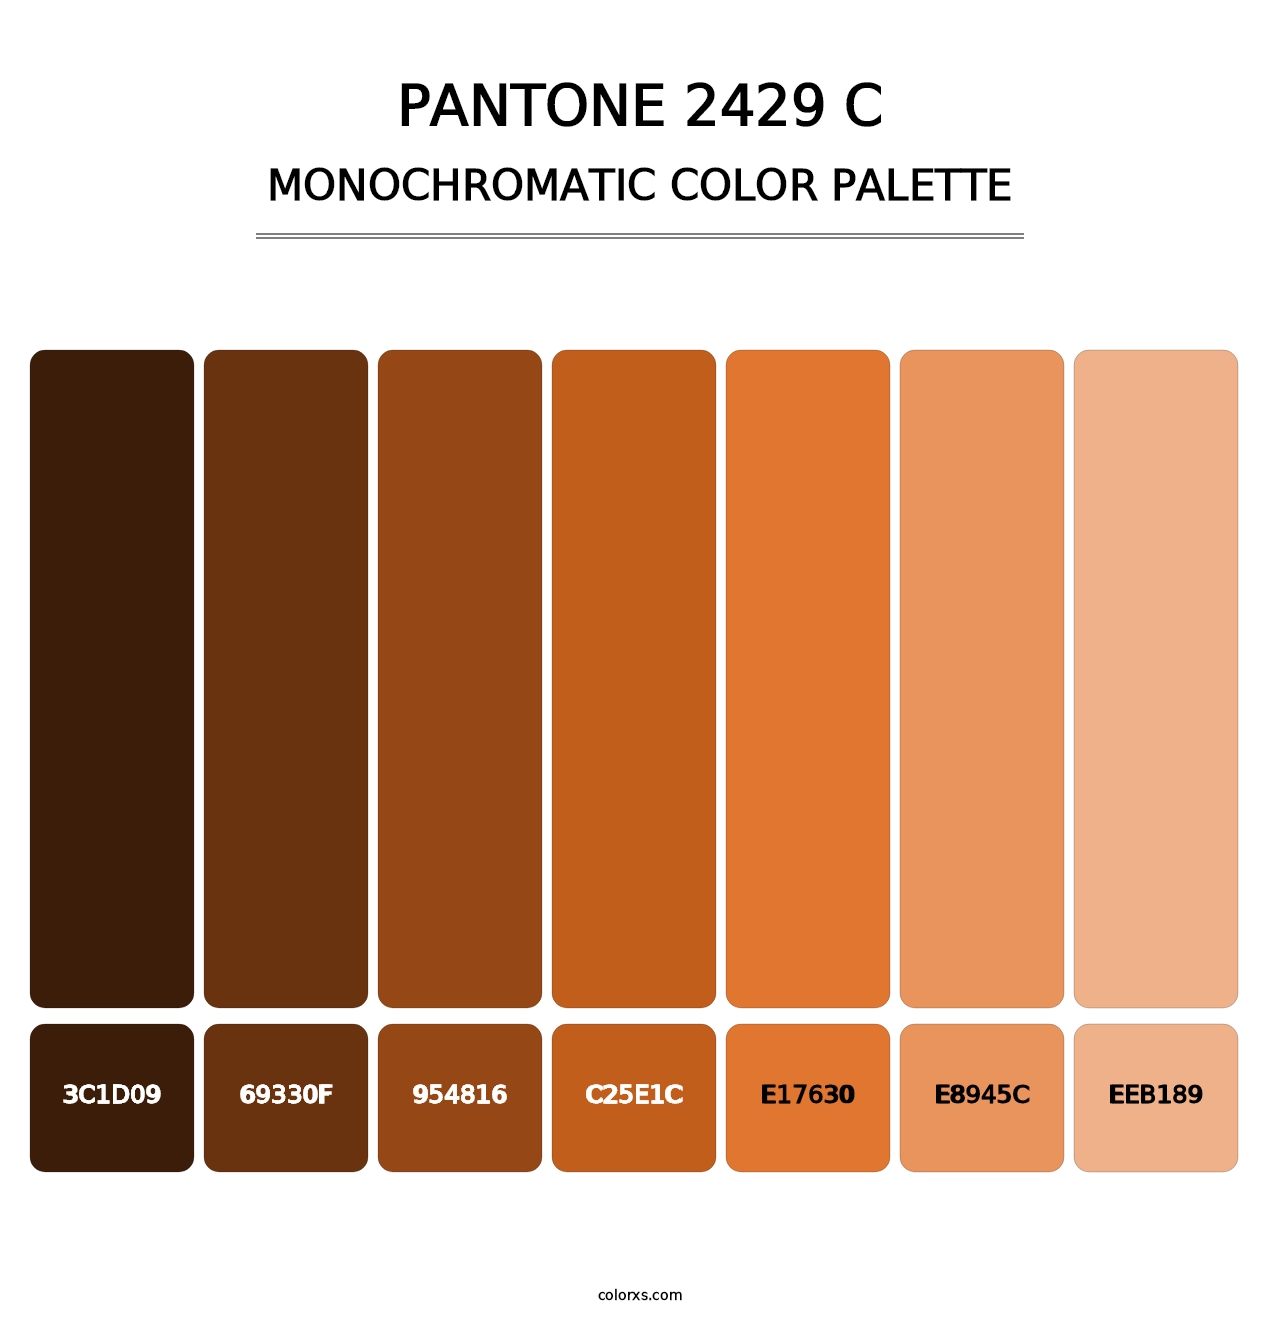 PANTONE 2429 C - Monochromatic Color Palette